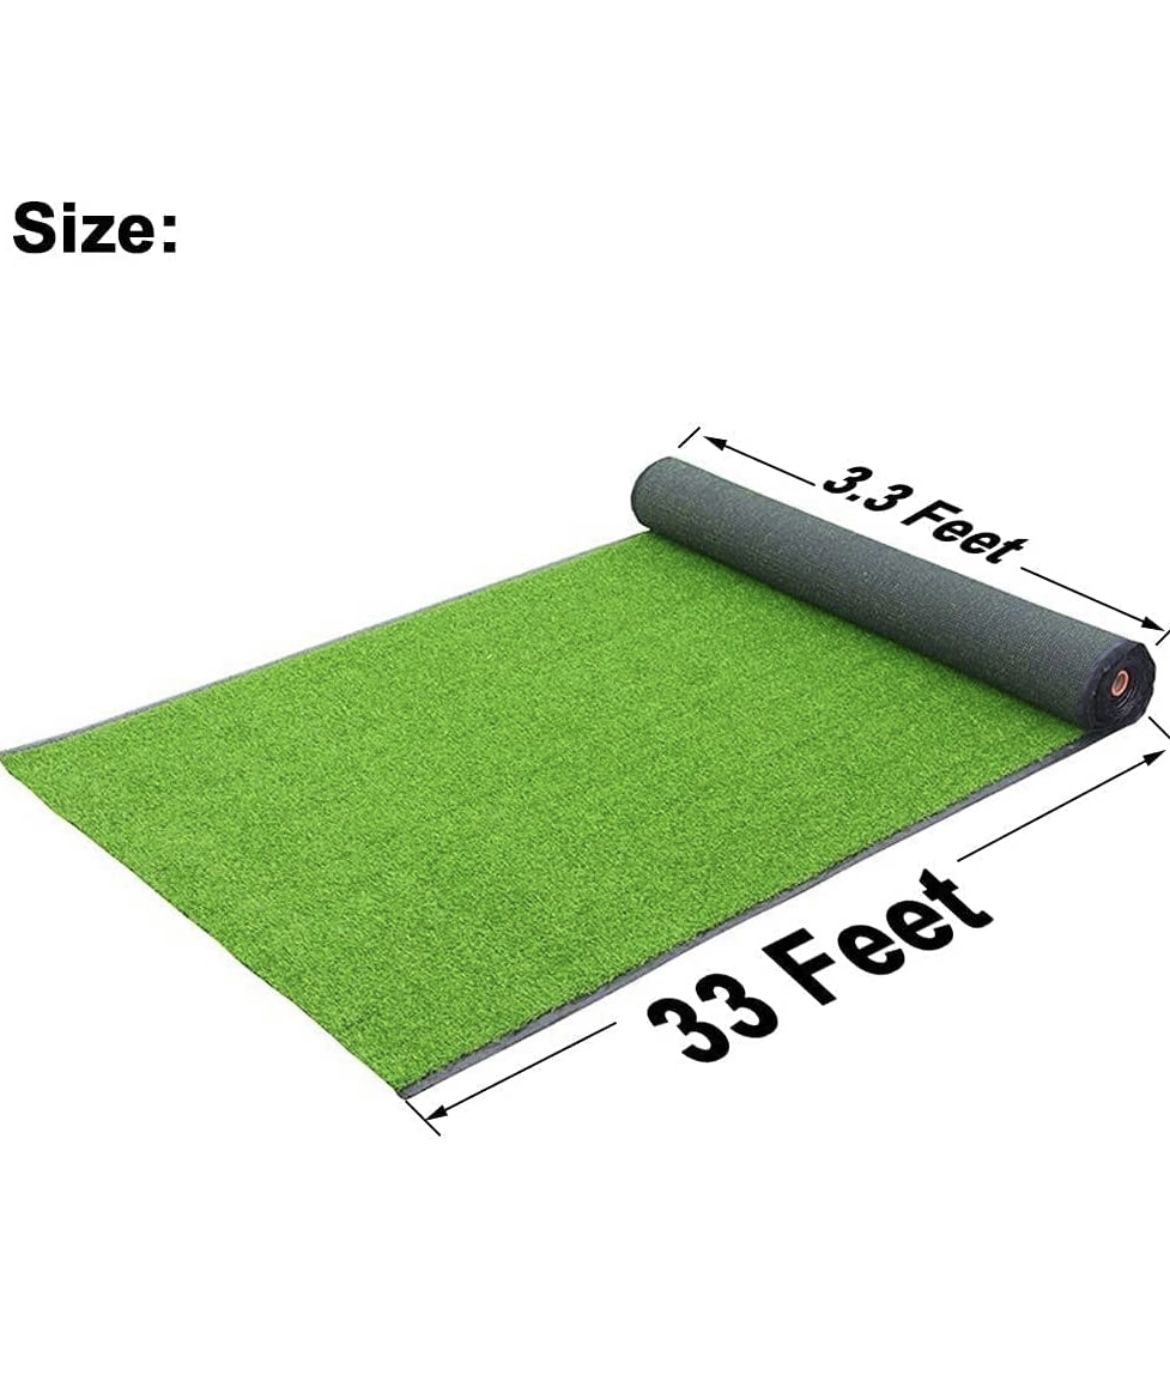 Grass Carpet 